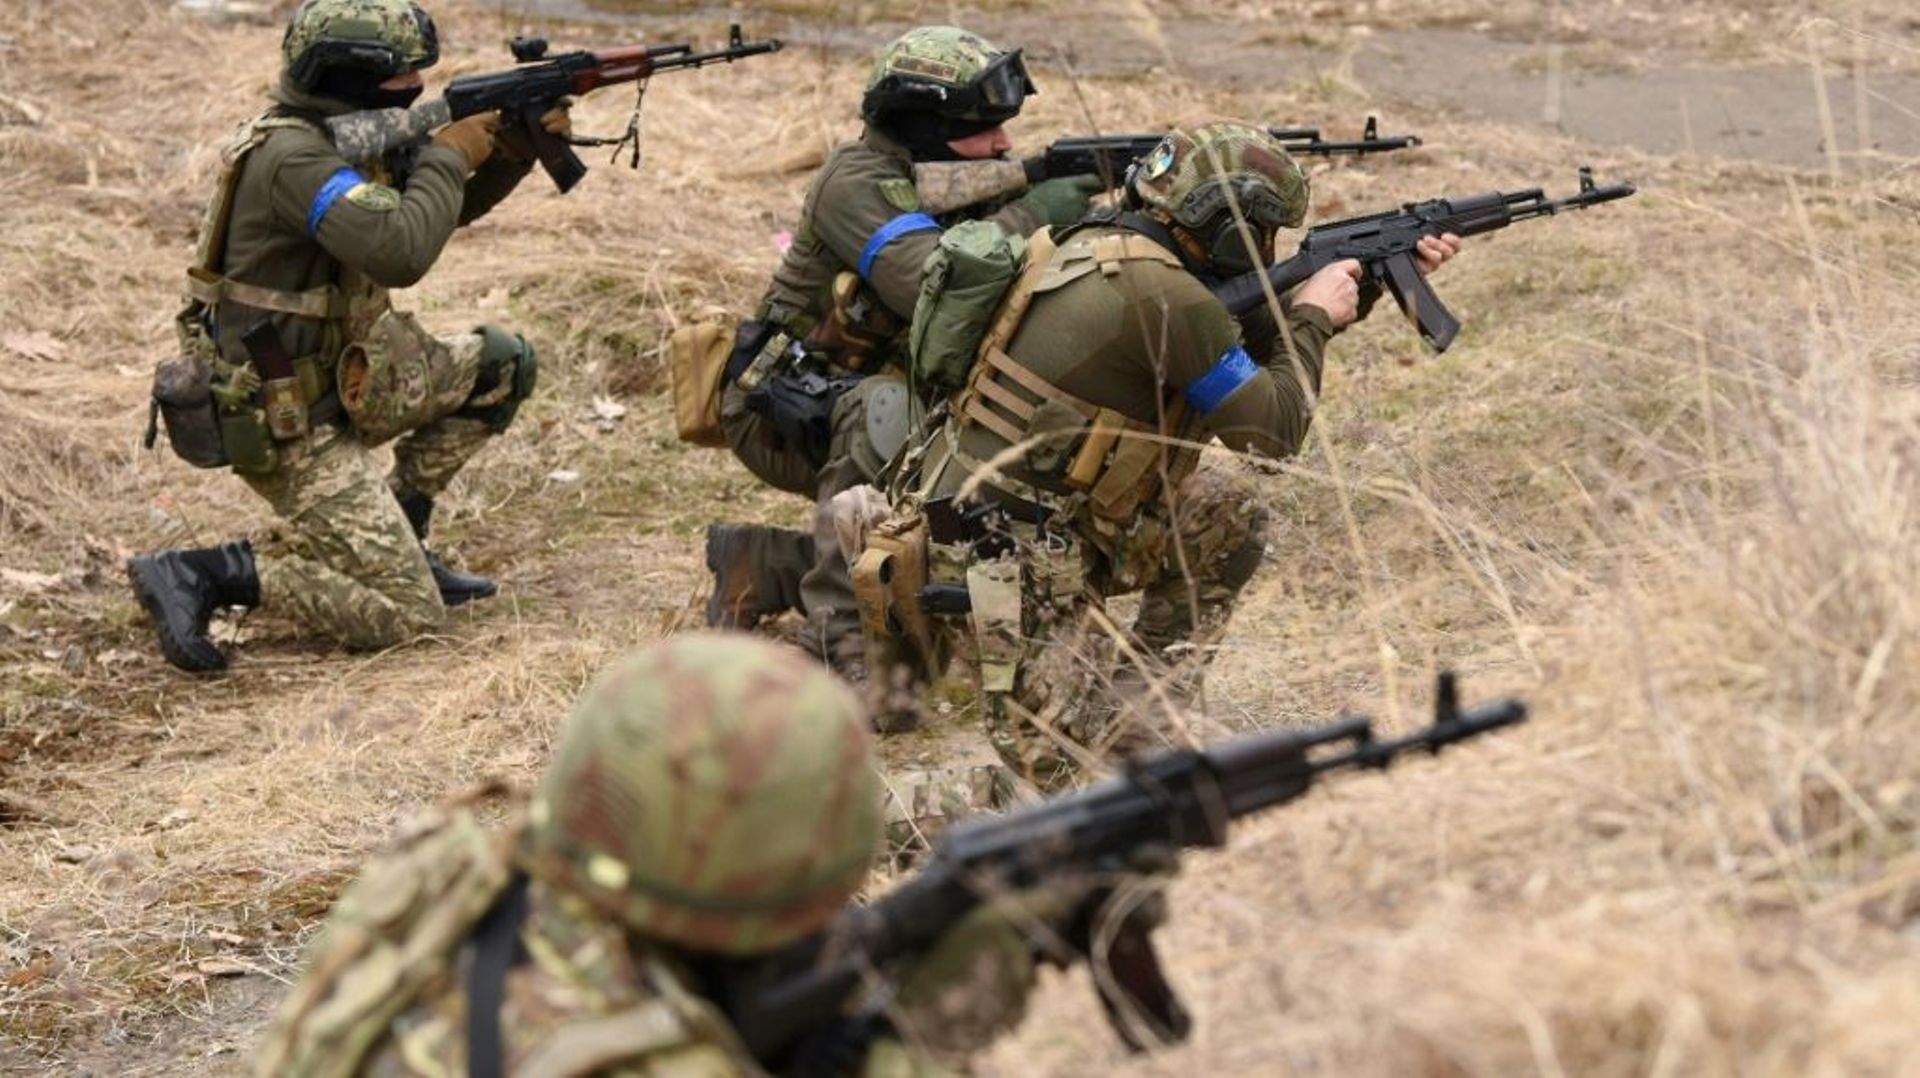 Des membres des forces de défense territoriale ukrainiennes s’entraînent au combat près de Lviv, le 16 mars 2022